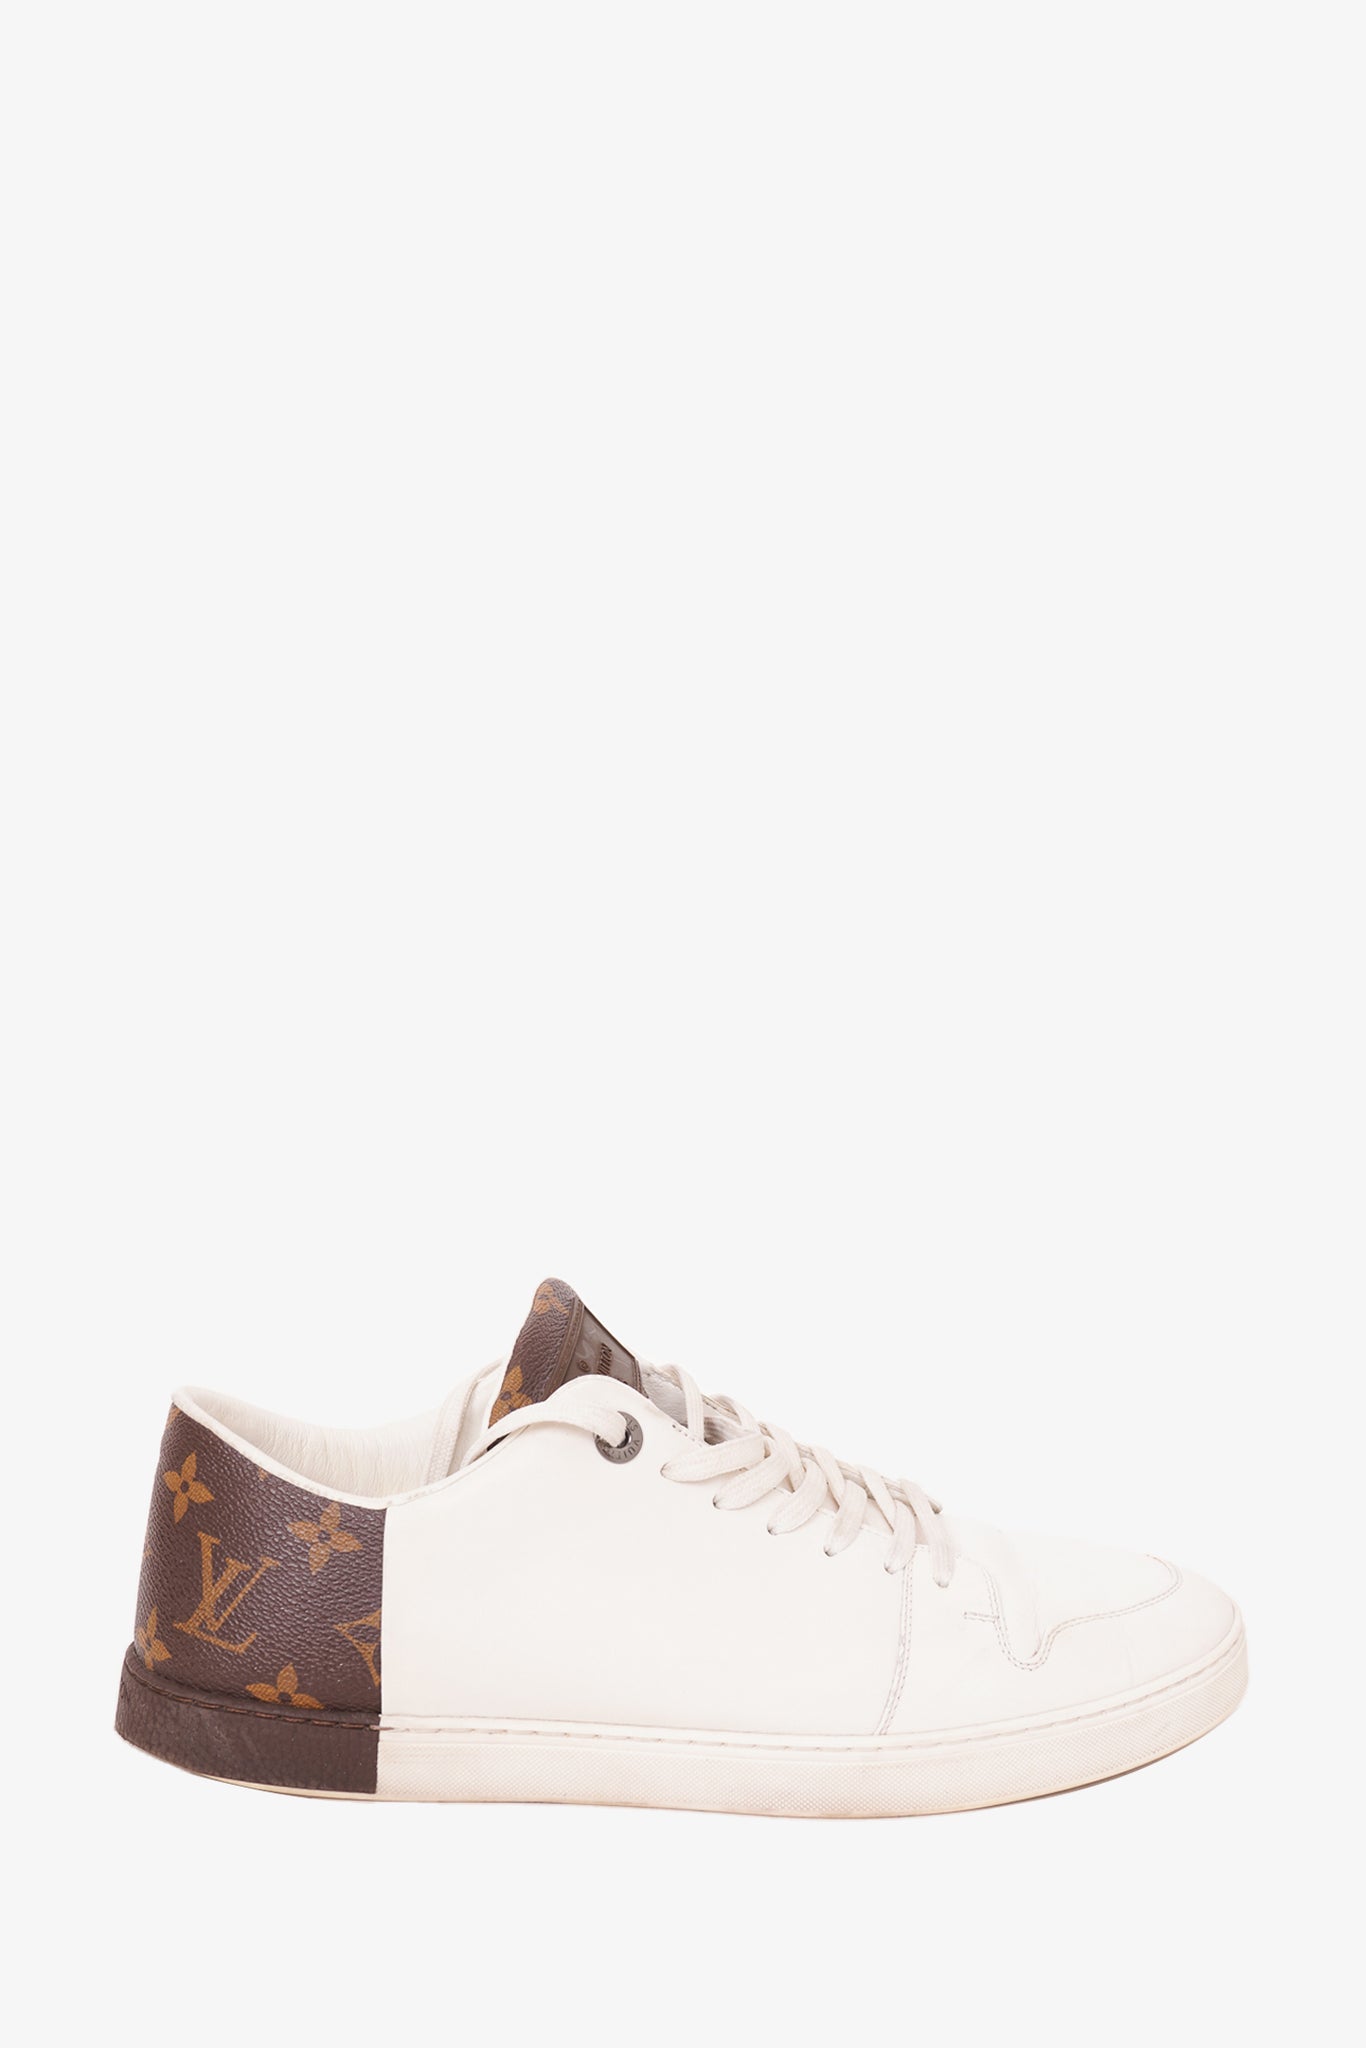 Louis Vuitton Rivoli Black Brown White Men's Sneakers Size 8